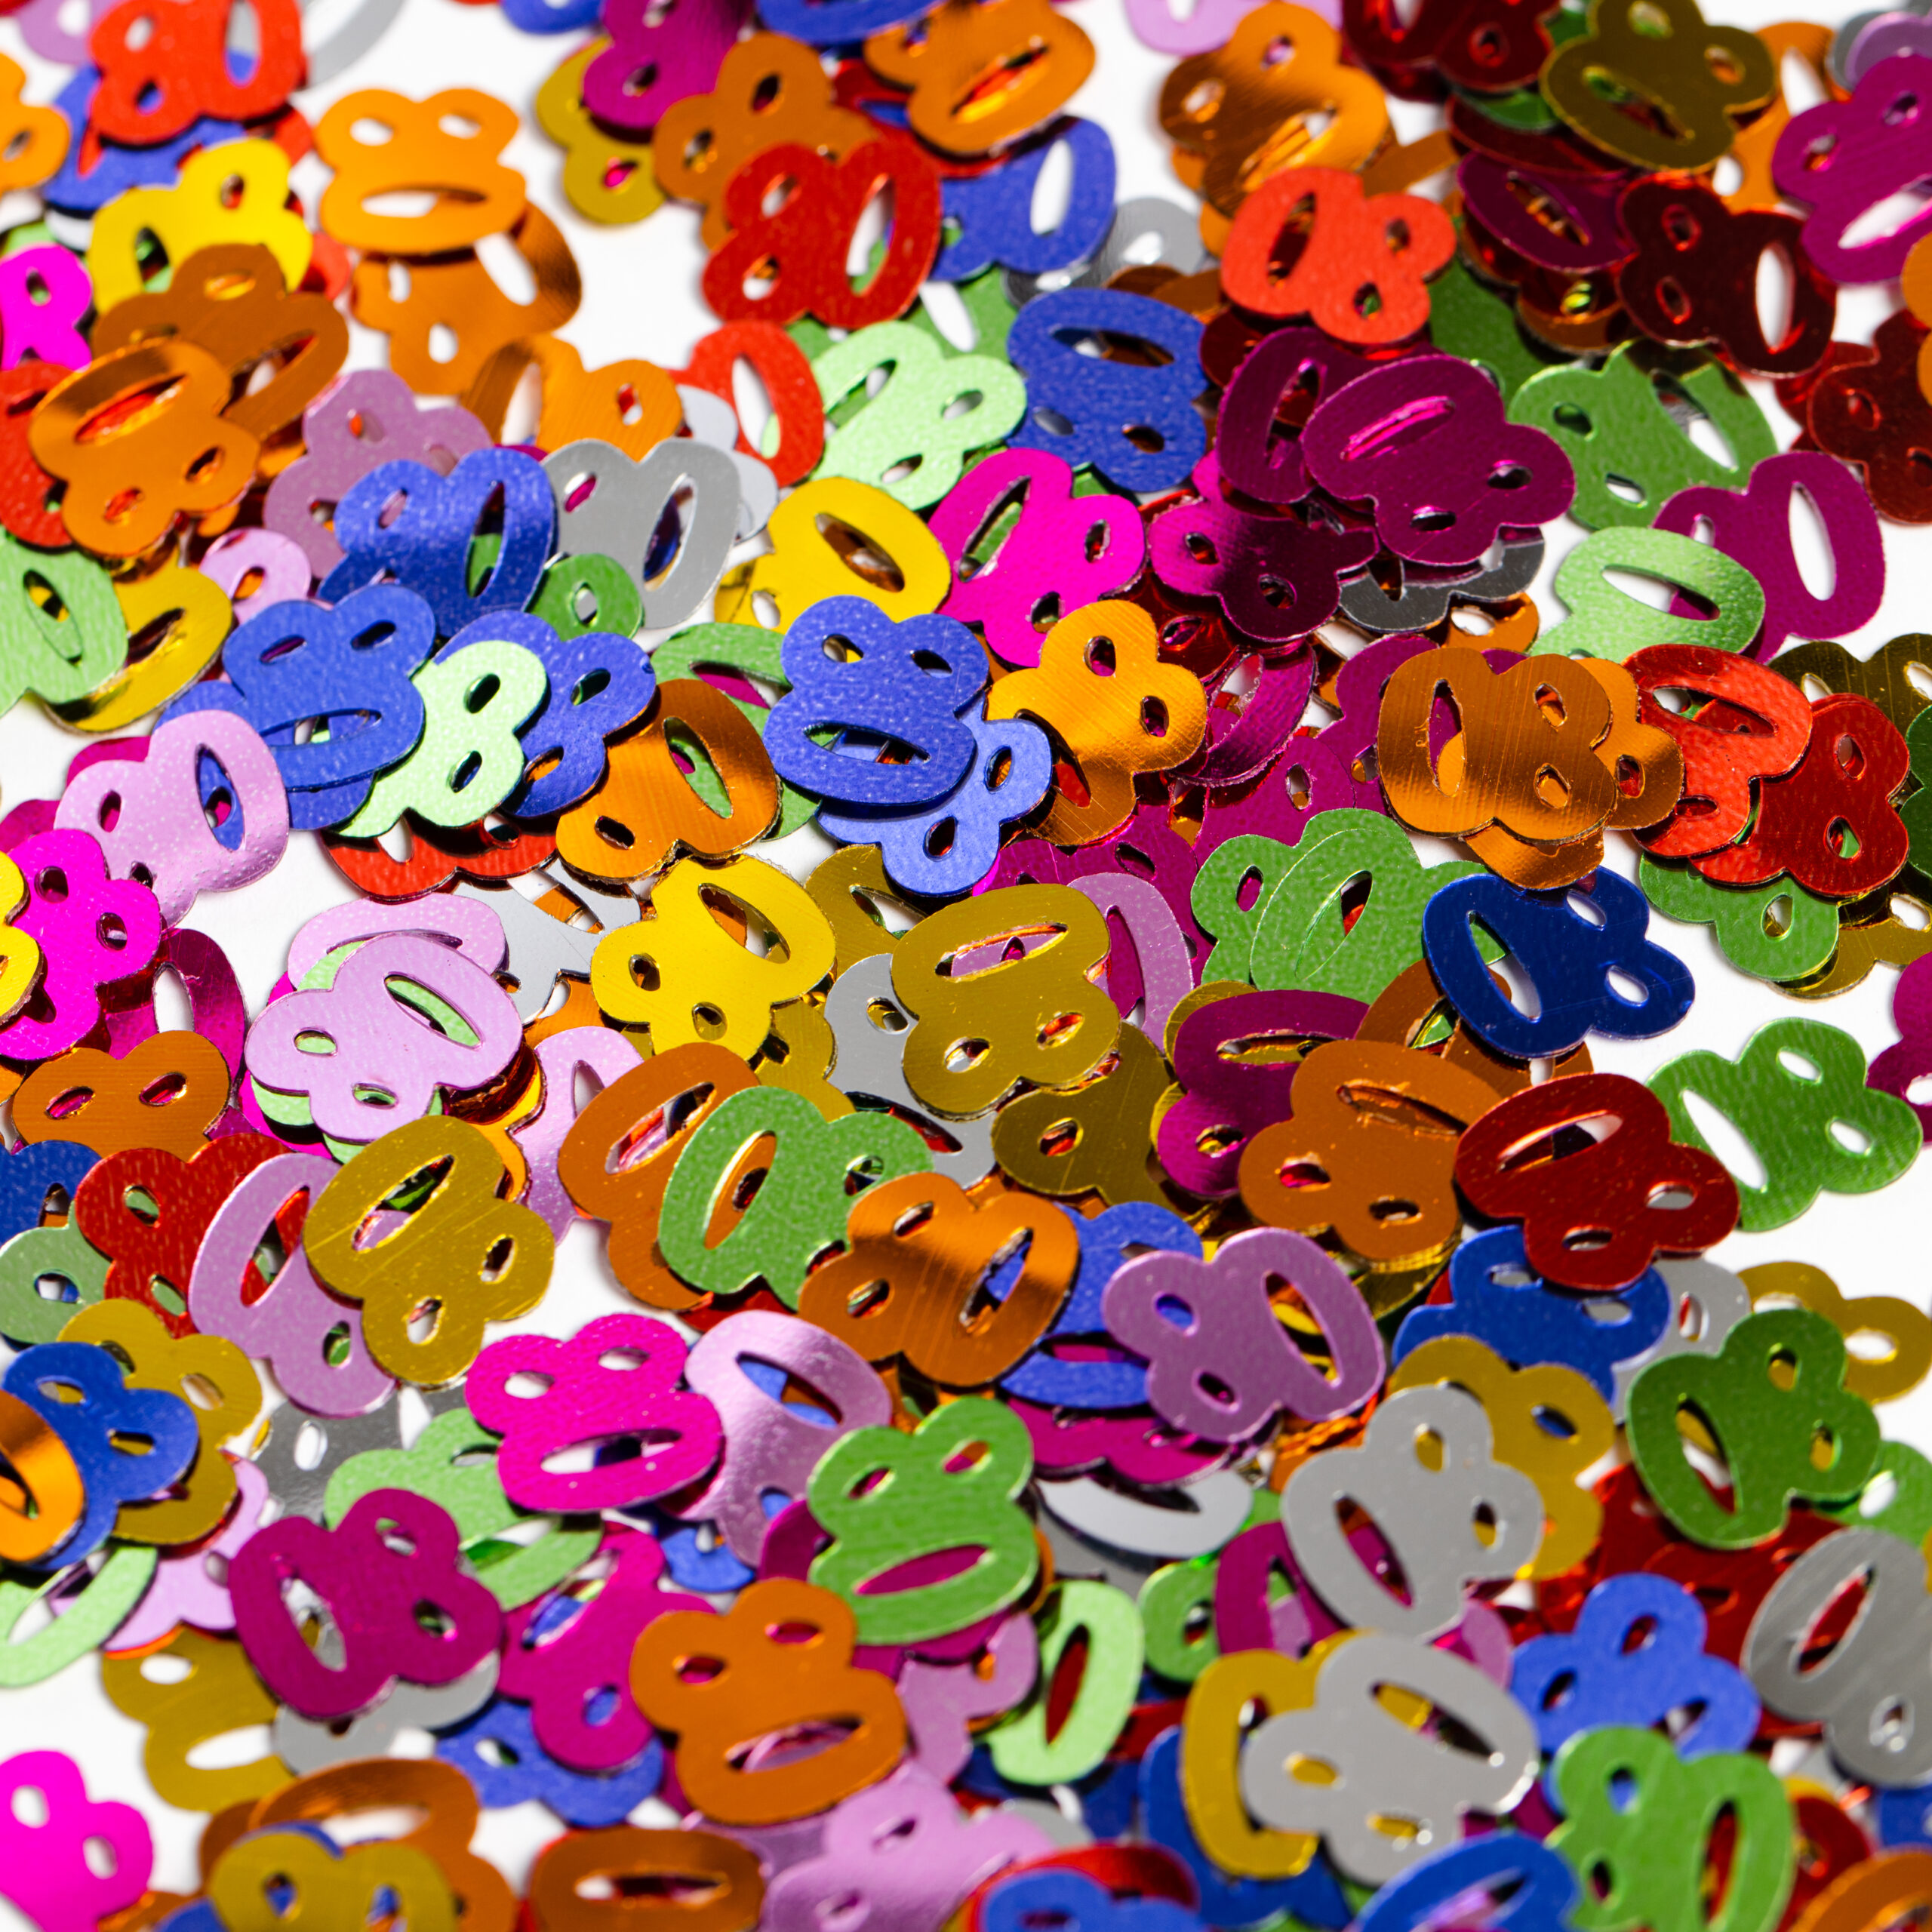 Sier-Confetti Multicolor 80 14gram